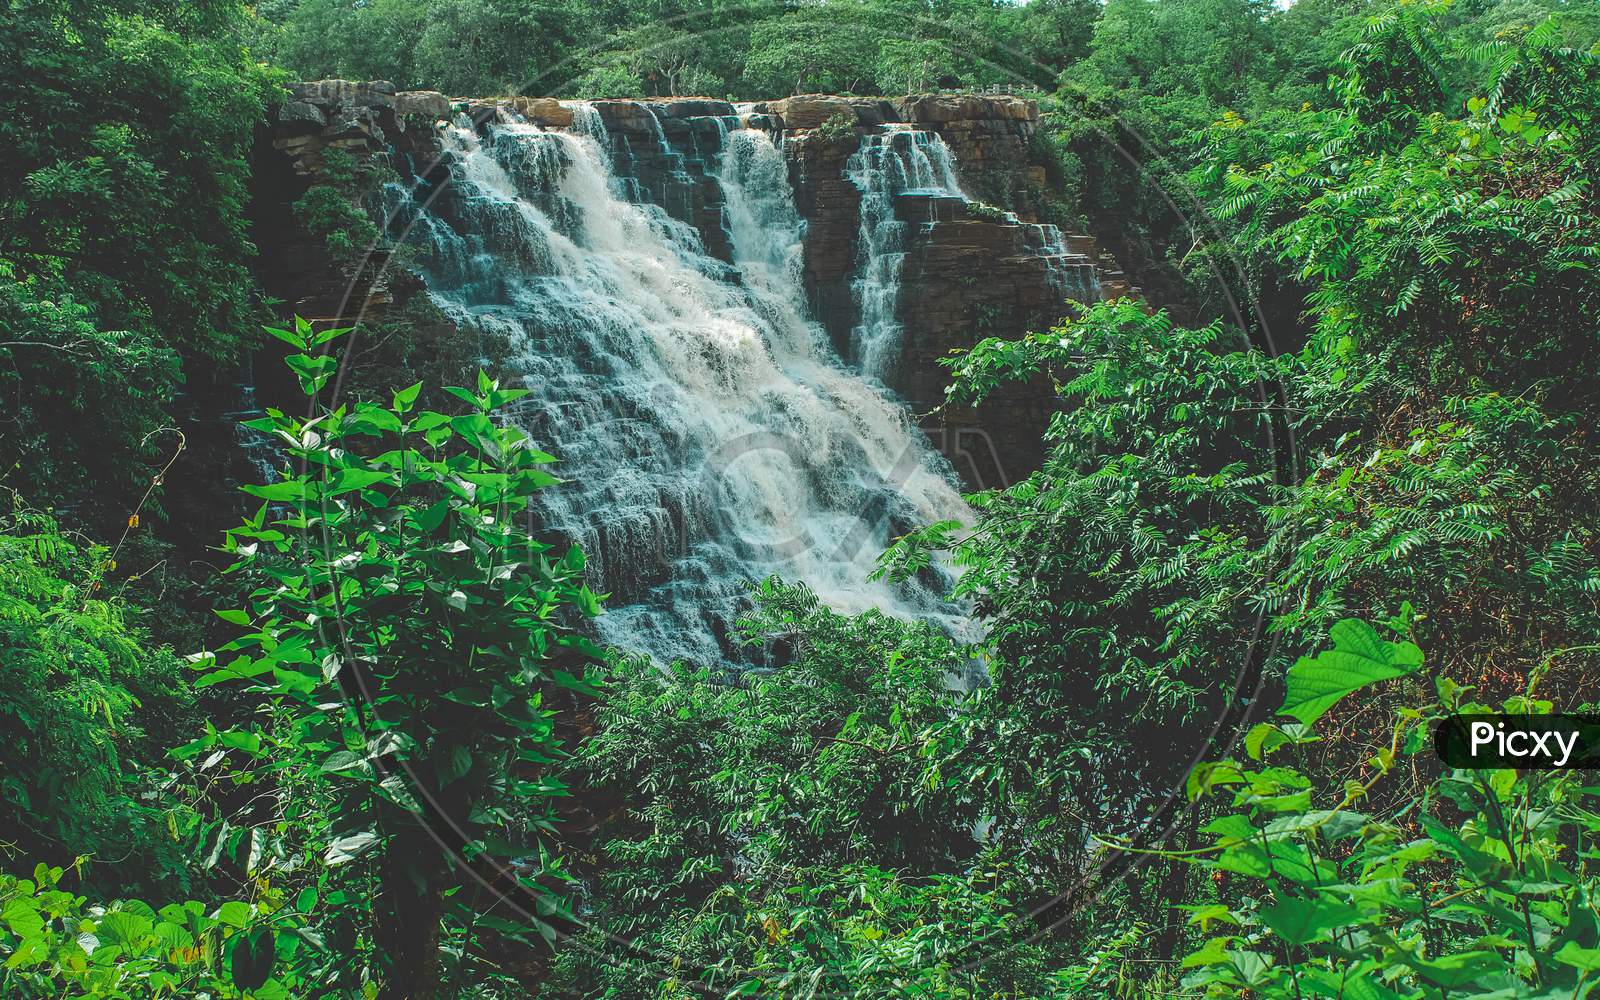 Tirathgarh Waterfalls